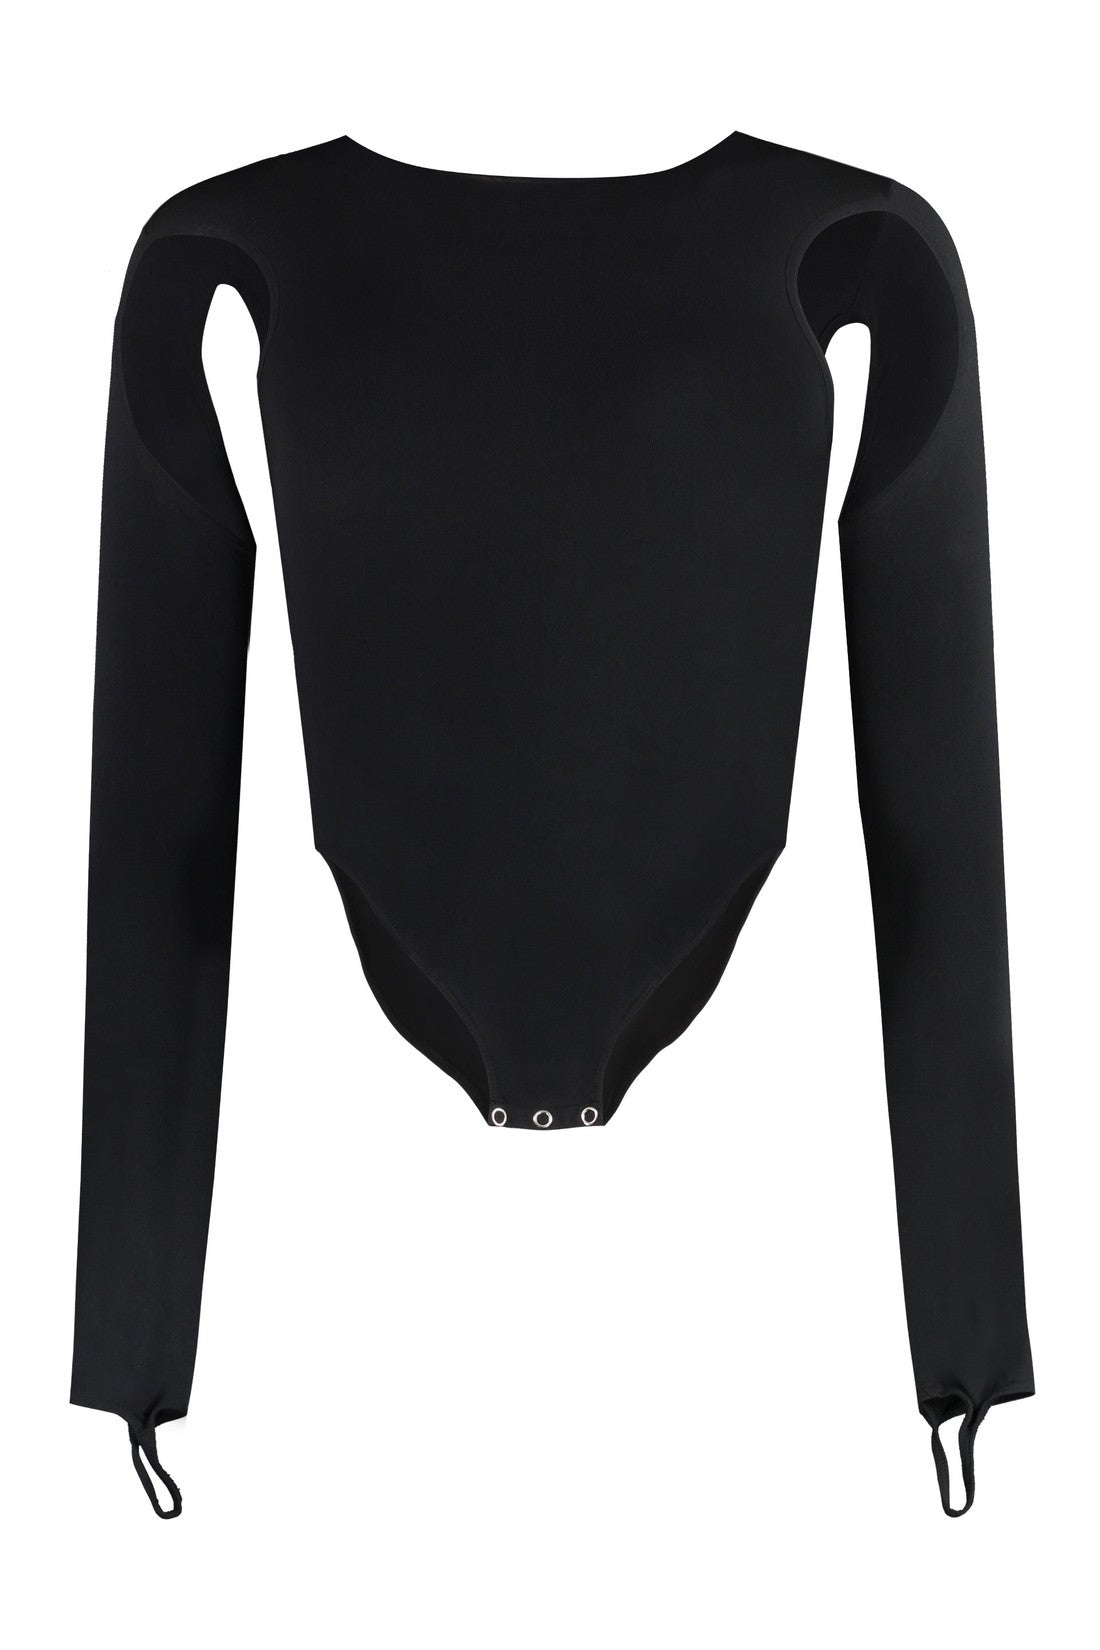 ANDREADAMO-OUTLET-SALE-Jersey bodysuit-ARCHIVIST